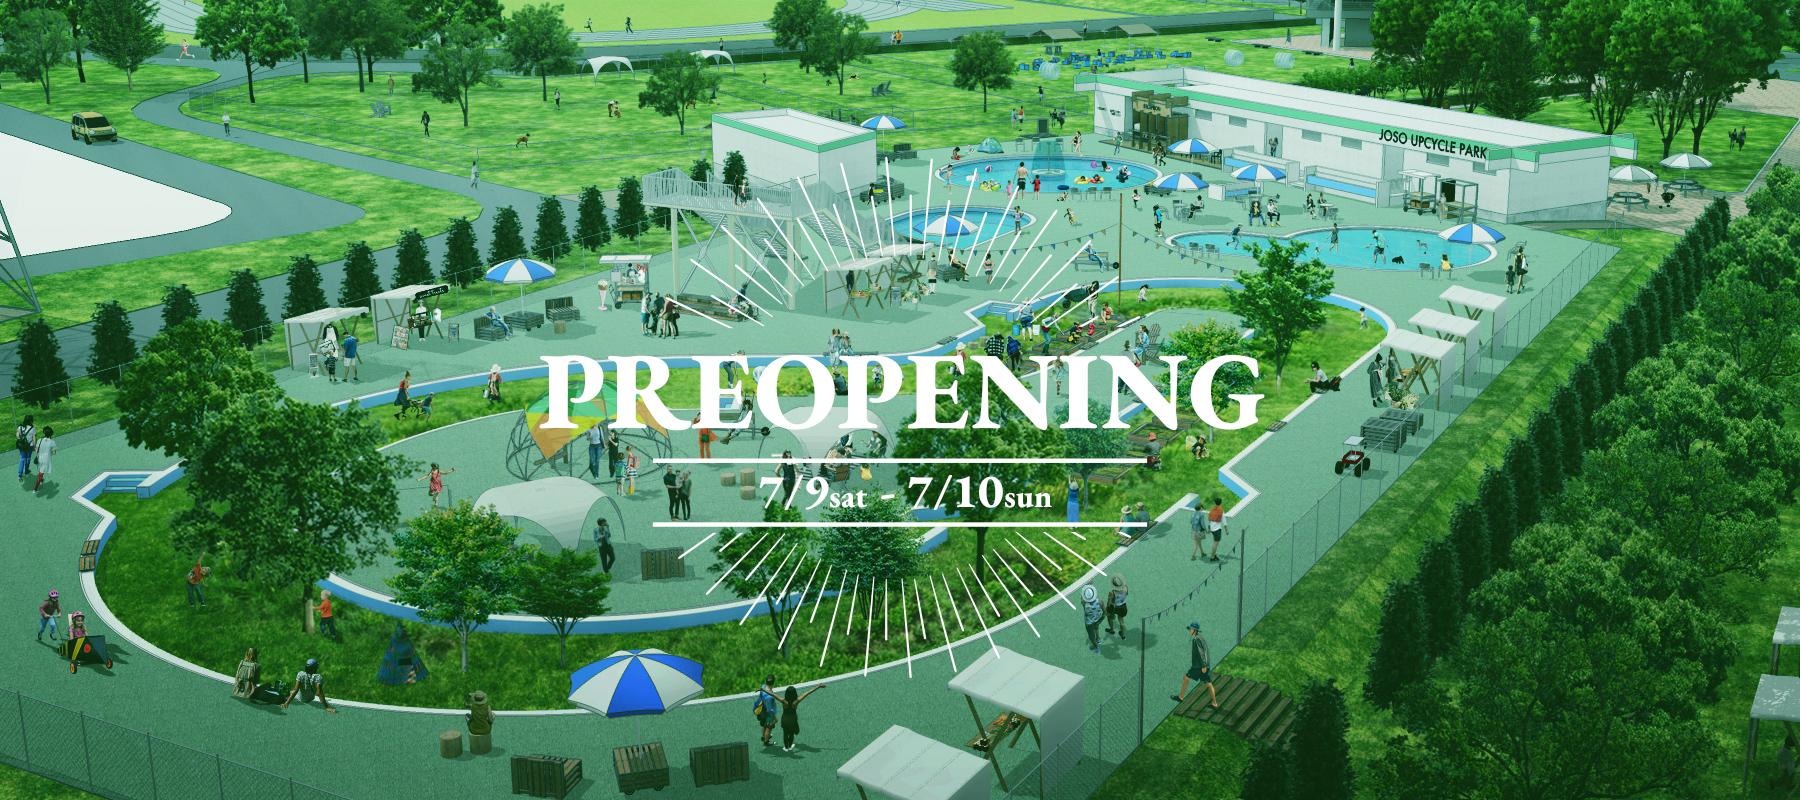 2022年7月9日(土)・10日(日)常総運動公園 プレオープンイベント開催